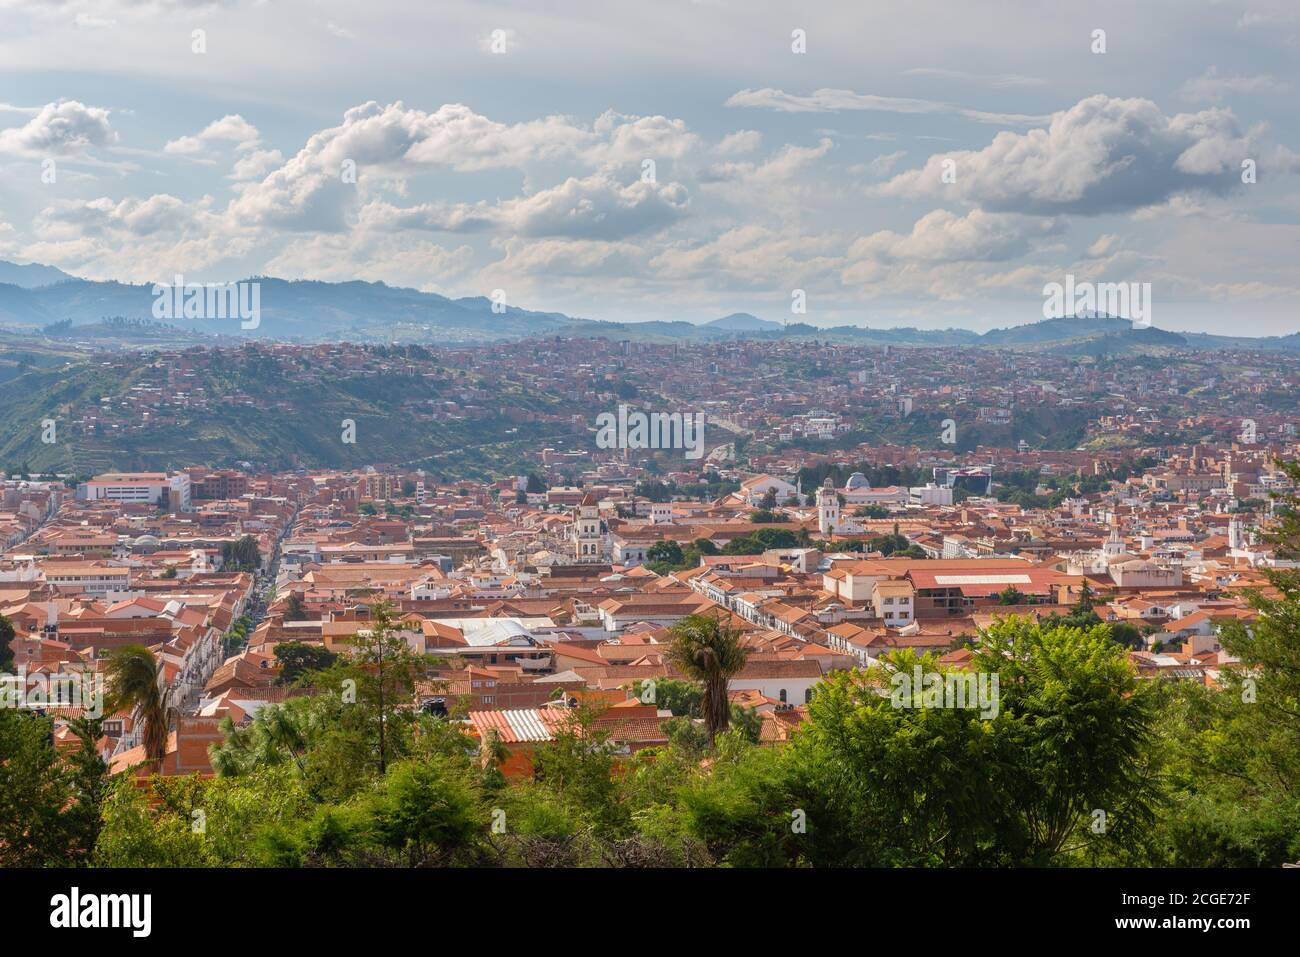 Koloniale Stadtgründung von Mirador de la Recoleta, Sucre, Stadtzentrum UNESCO Weltkulturerbe, Bolivien, Chuquisaca, Bolivien, Lateinamerika Stockfoto